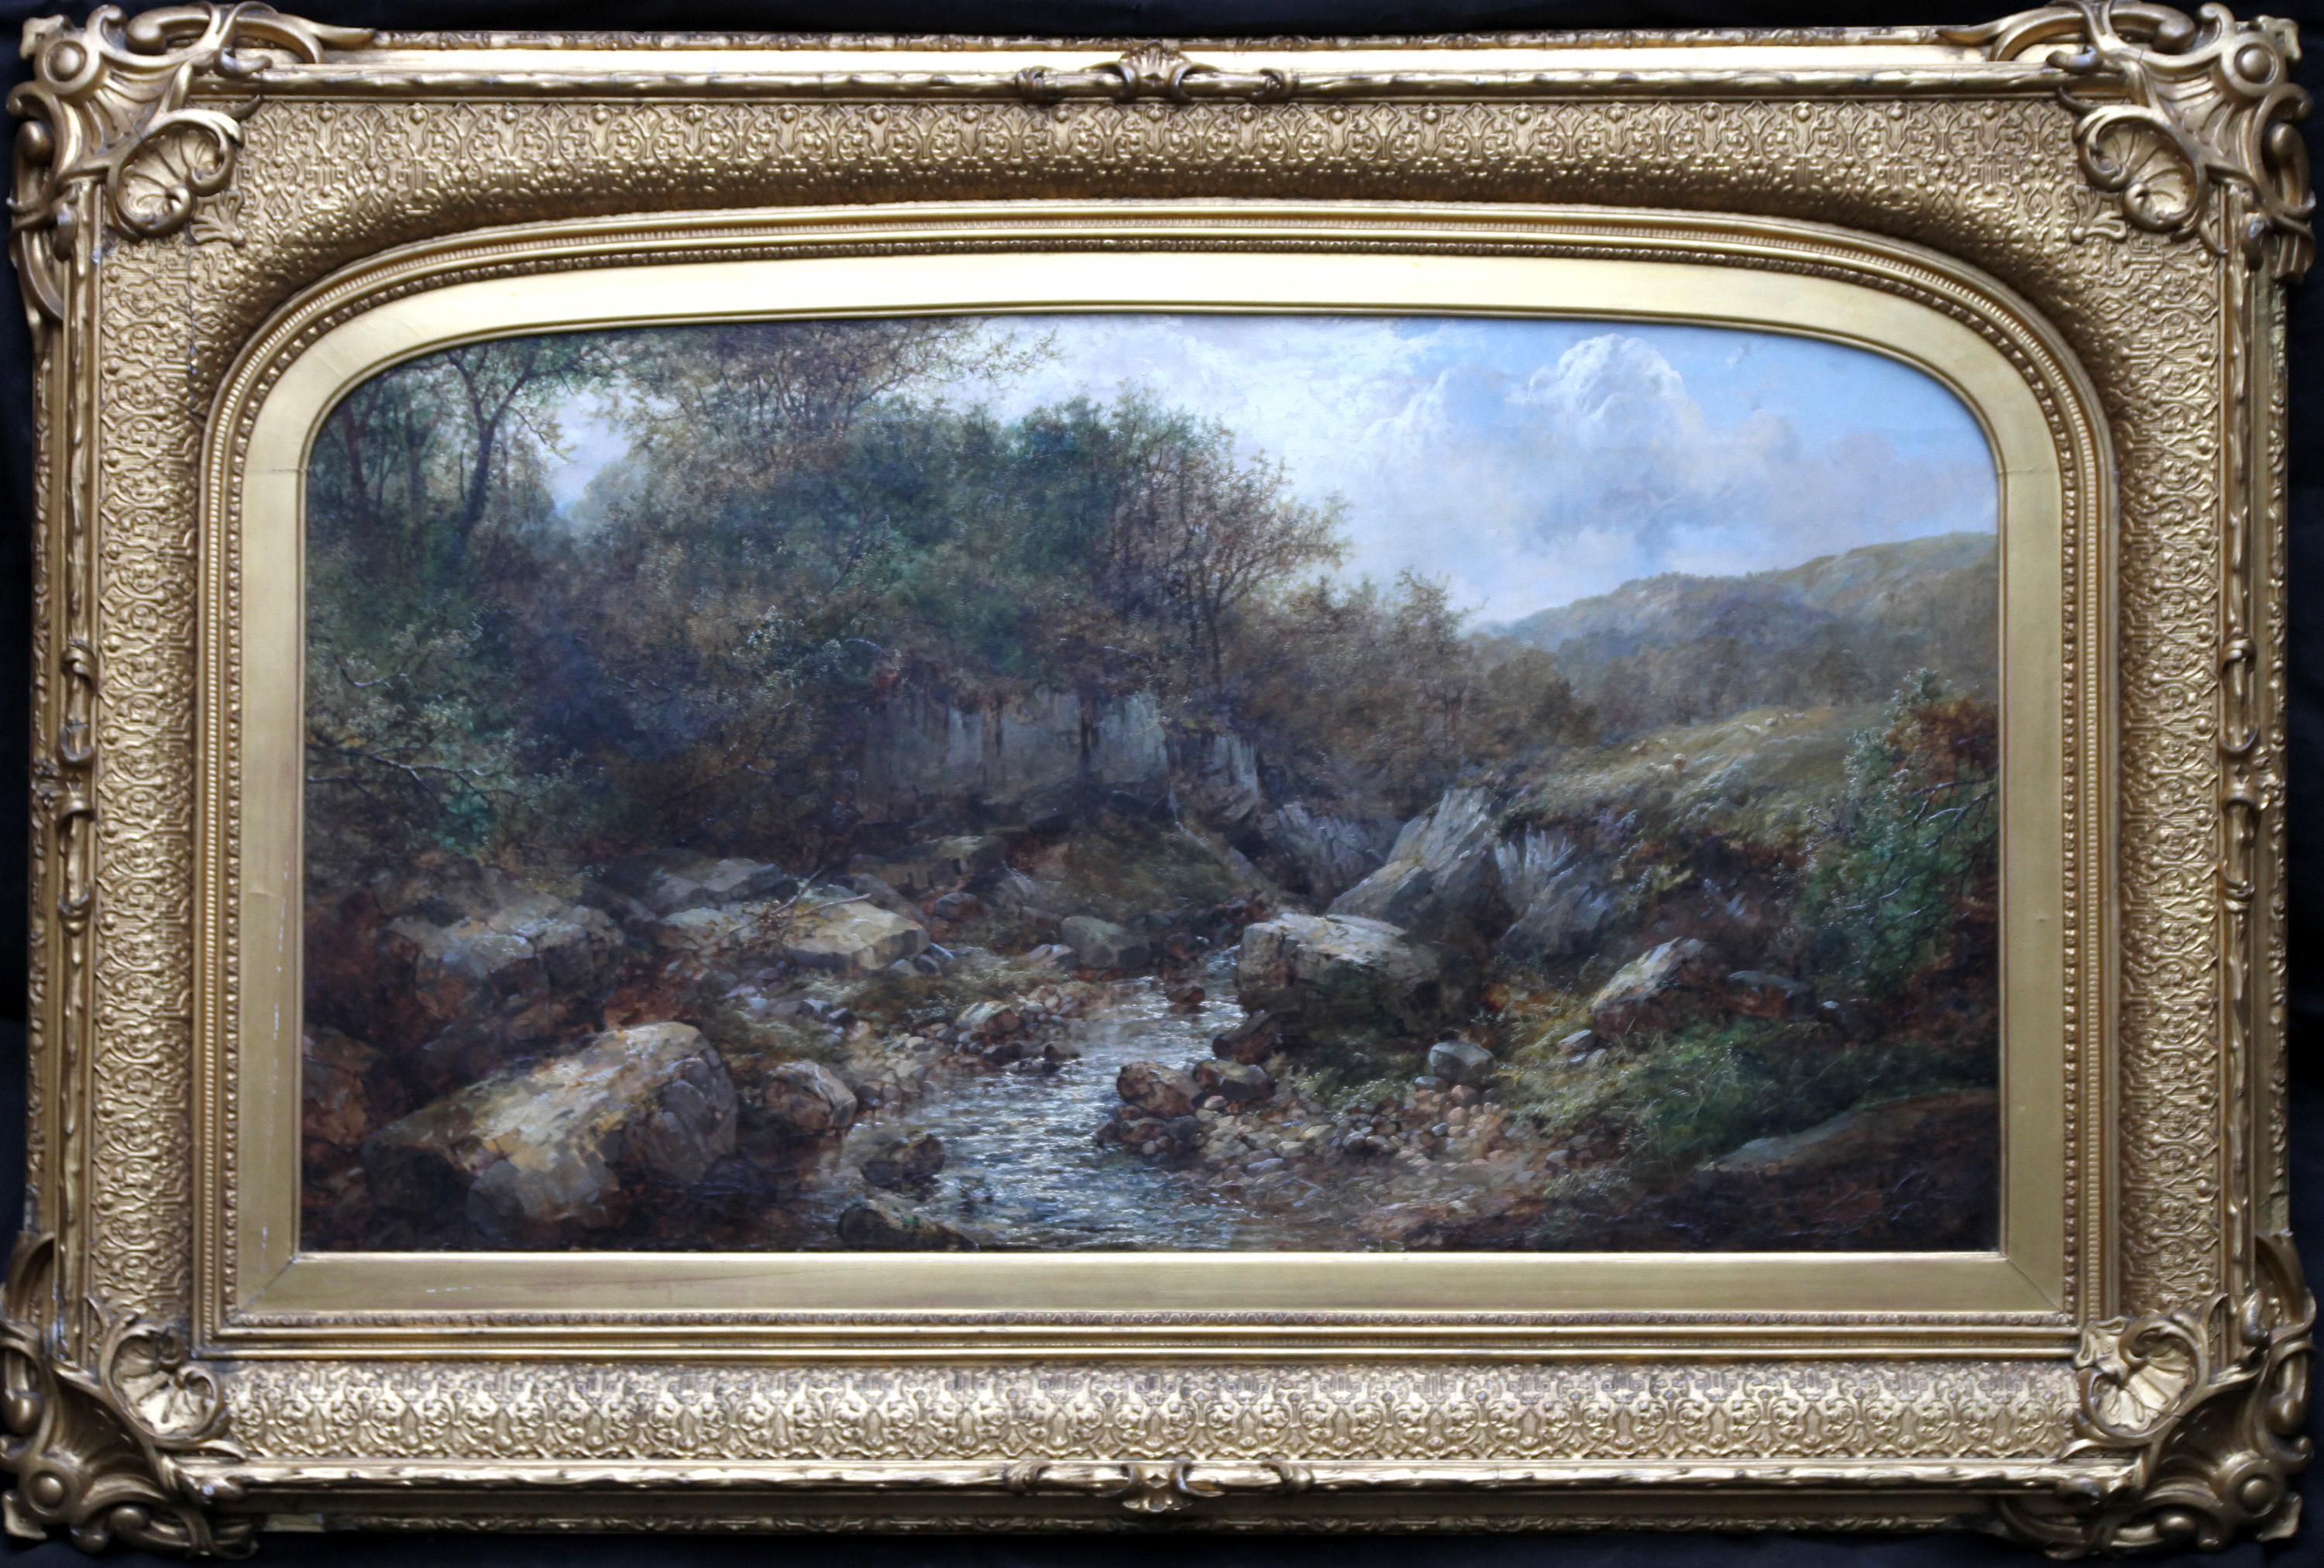 John Brandon Smith Landscape Painting - River Landscape - British art 19th century landscape oil painting